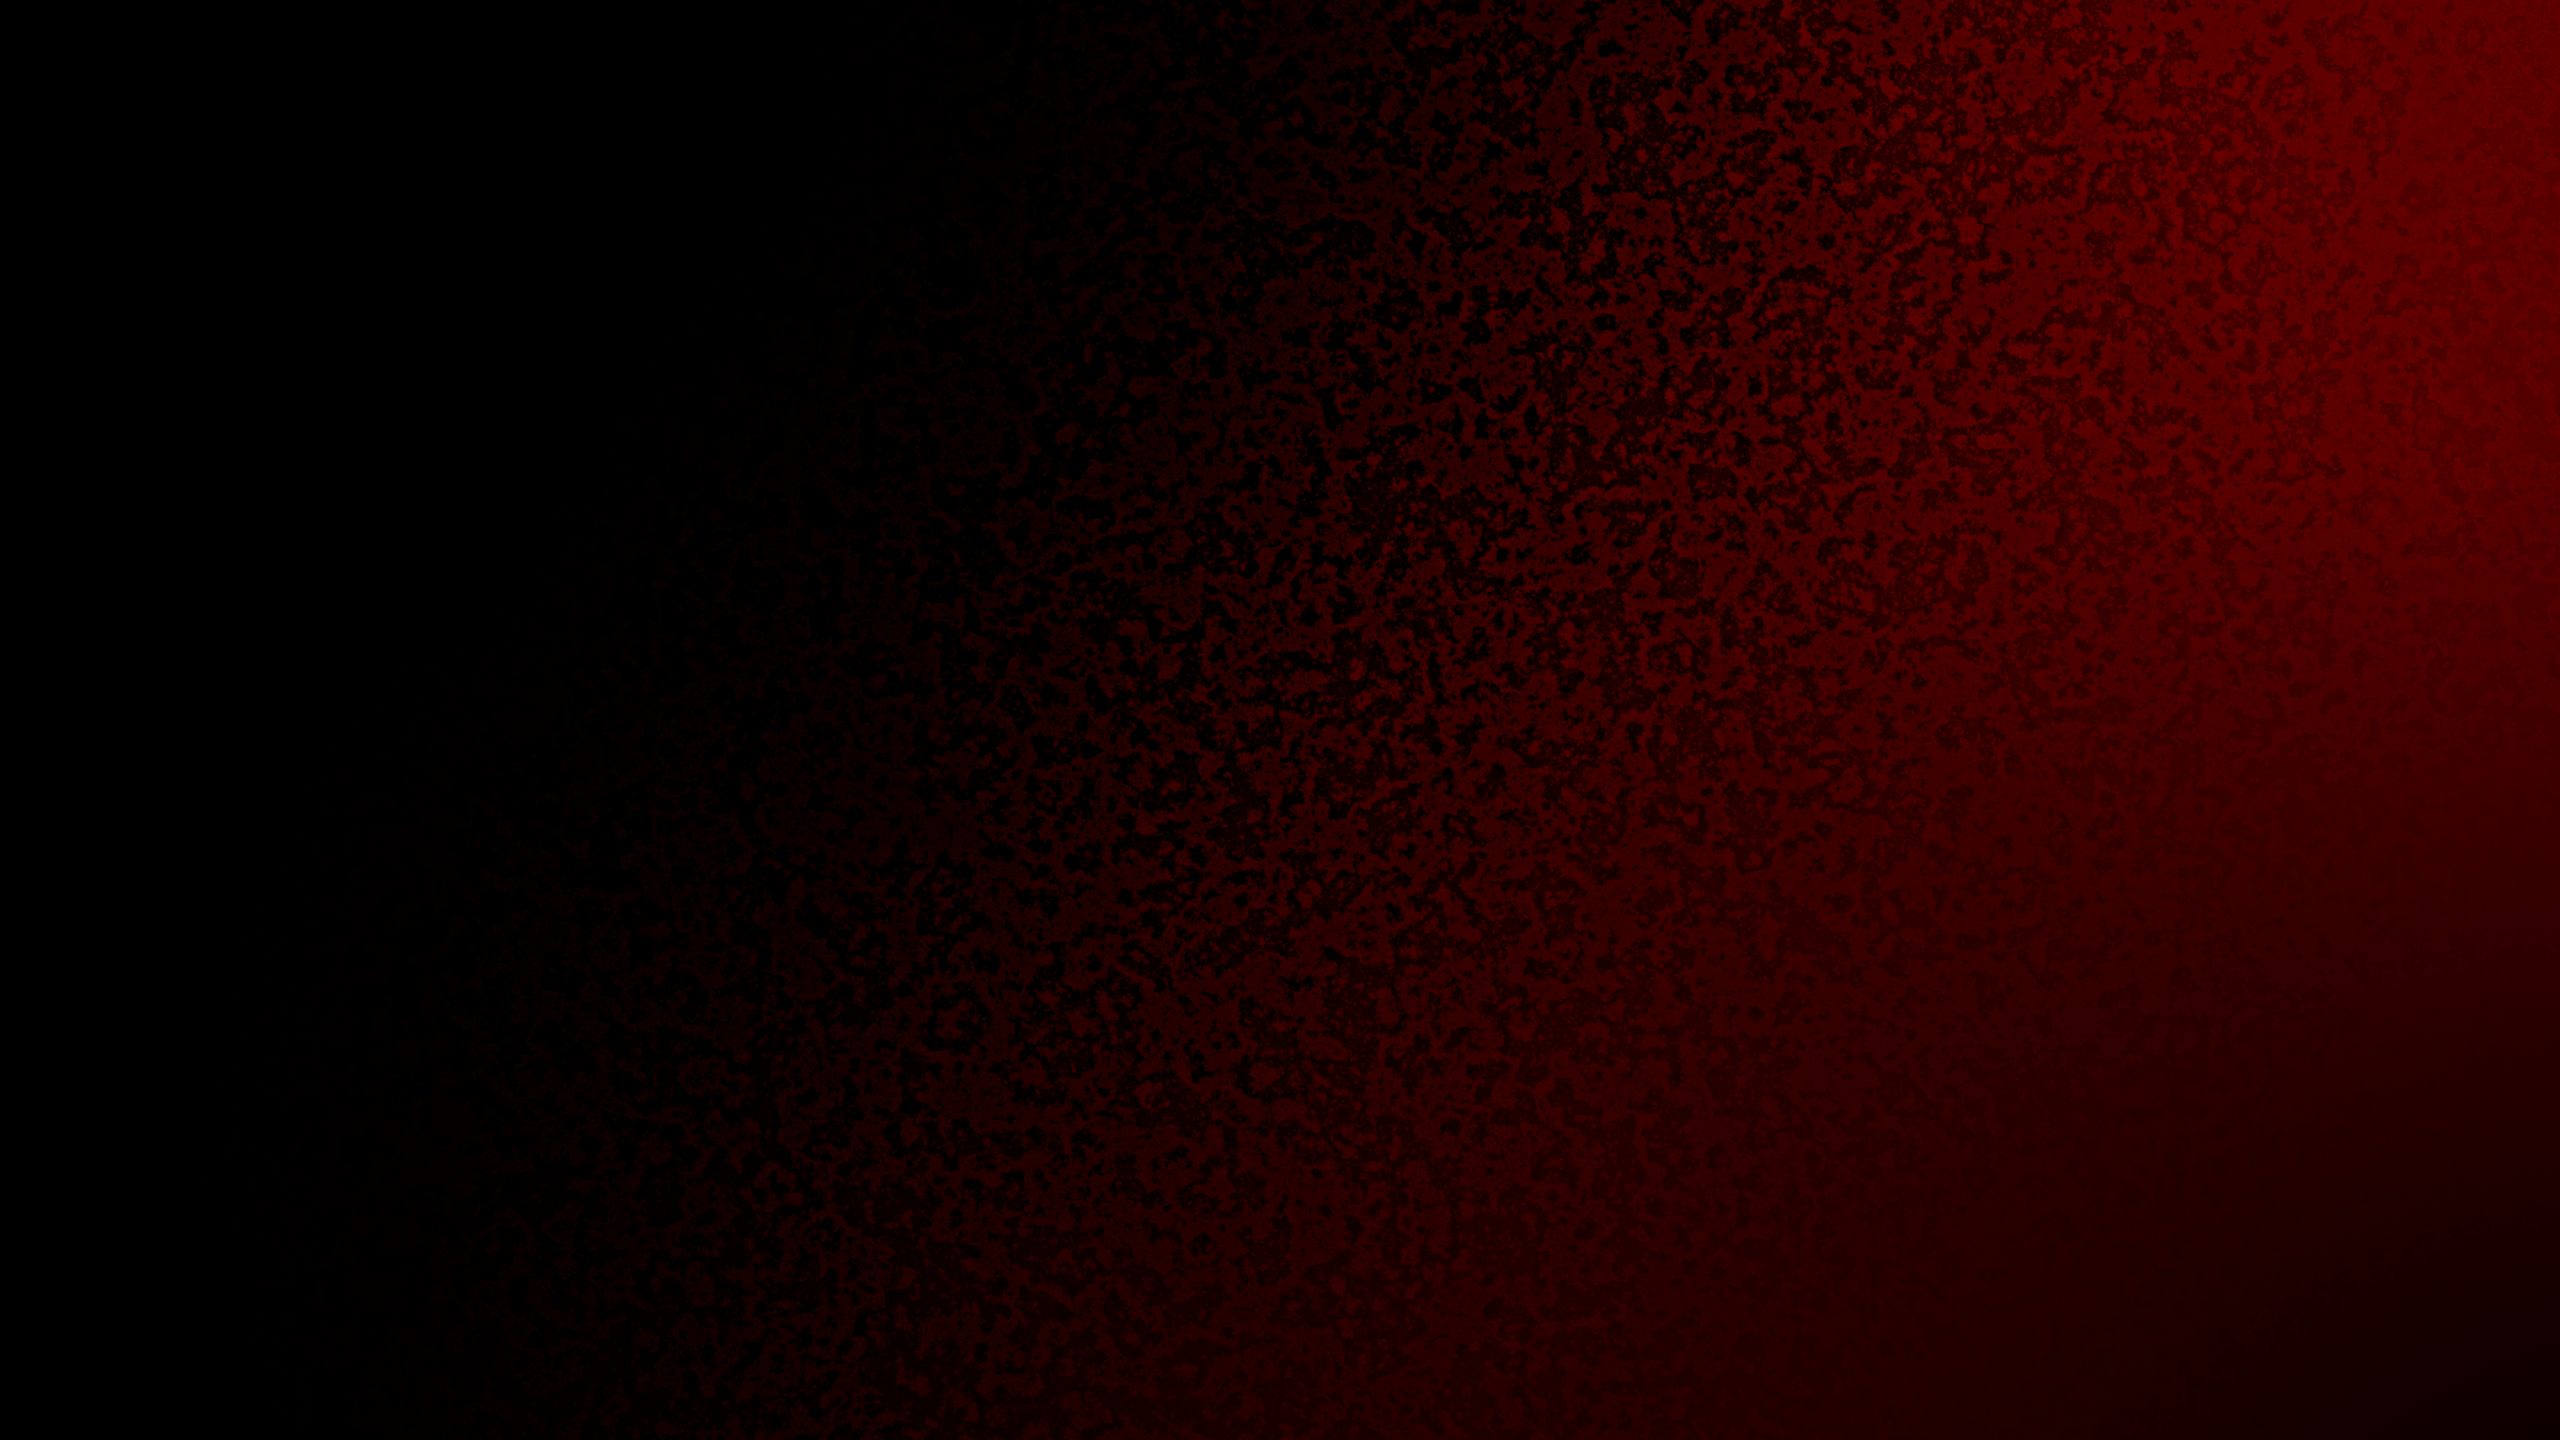 2560x1440 đỏ, # đơn giản, # bóng tối, # đặc điểm, Hình nền - Đỏ đậm